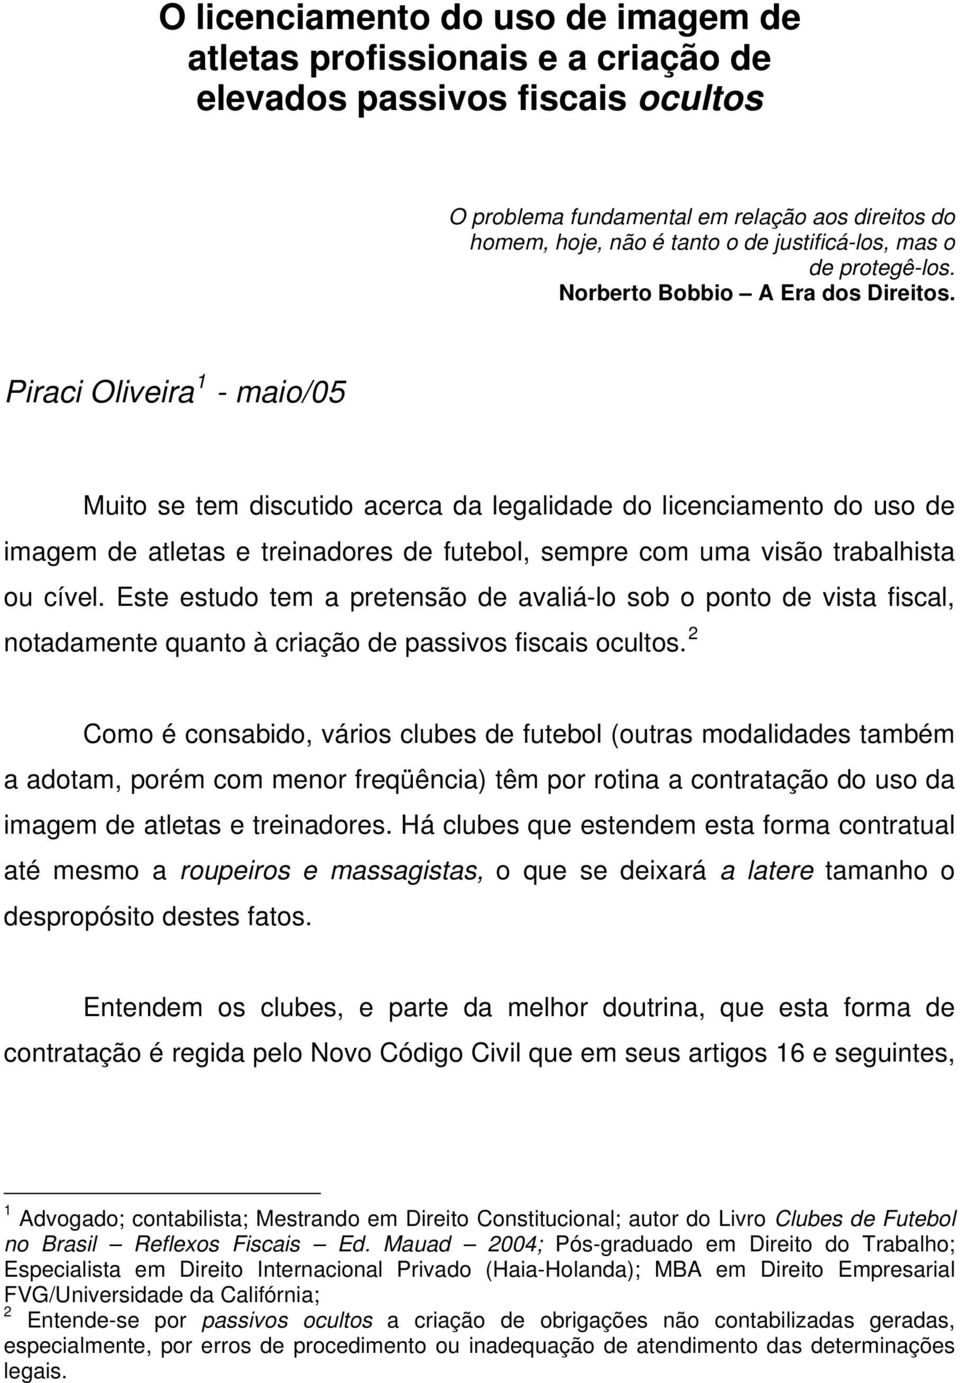 Piraci Oliveira 1 - maio/05 Muito se tem discutido acerca da legalidade do licenciamento do uso de imagem de atletas e treinadores de futebol, sempre com uma visão trabalhista ou cível.